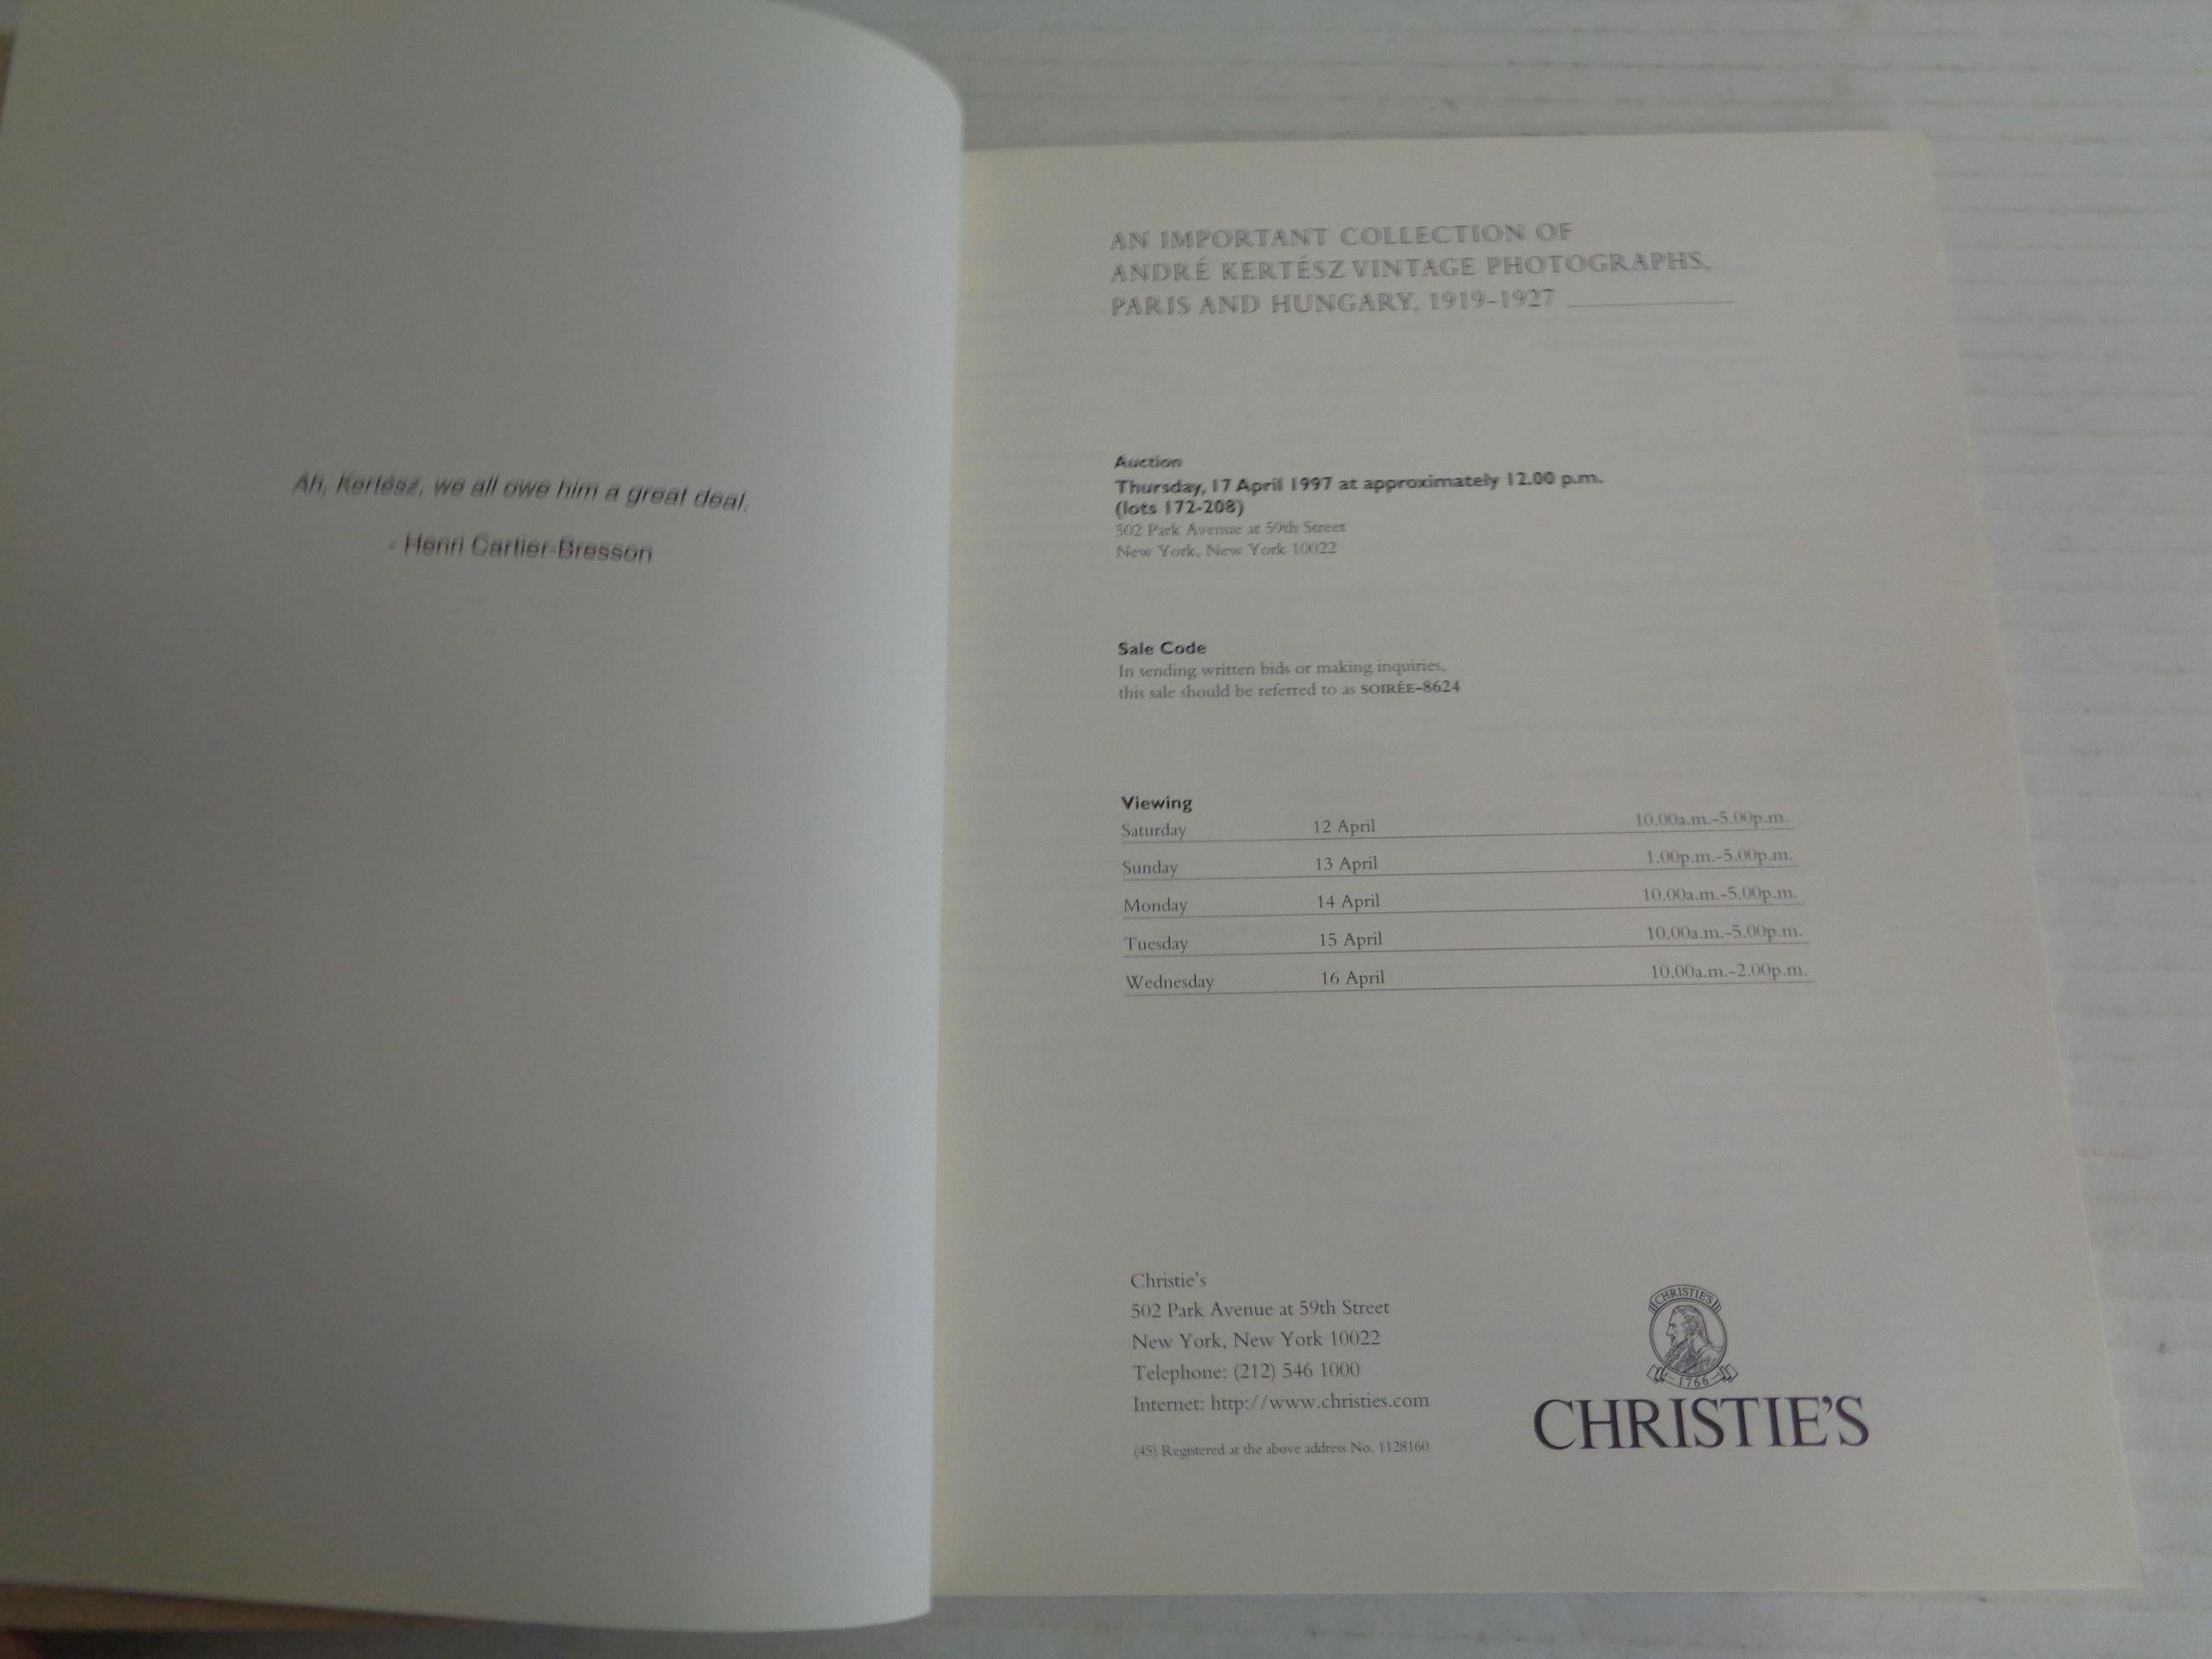 Fin du 20e siècle Une importante collection de photographies d'époque d'Andre Kertesz - 1997 Christie's  en vente